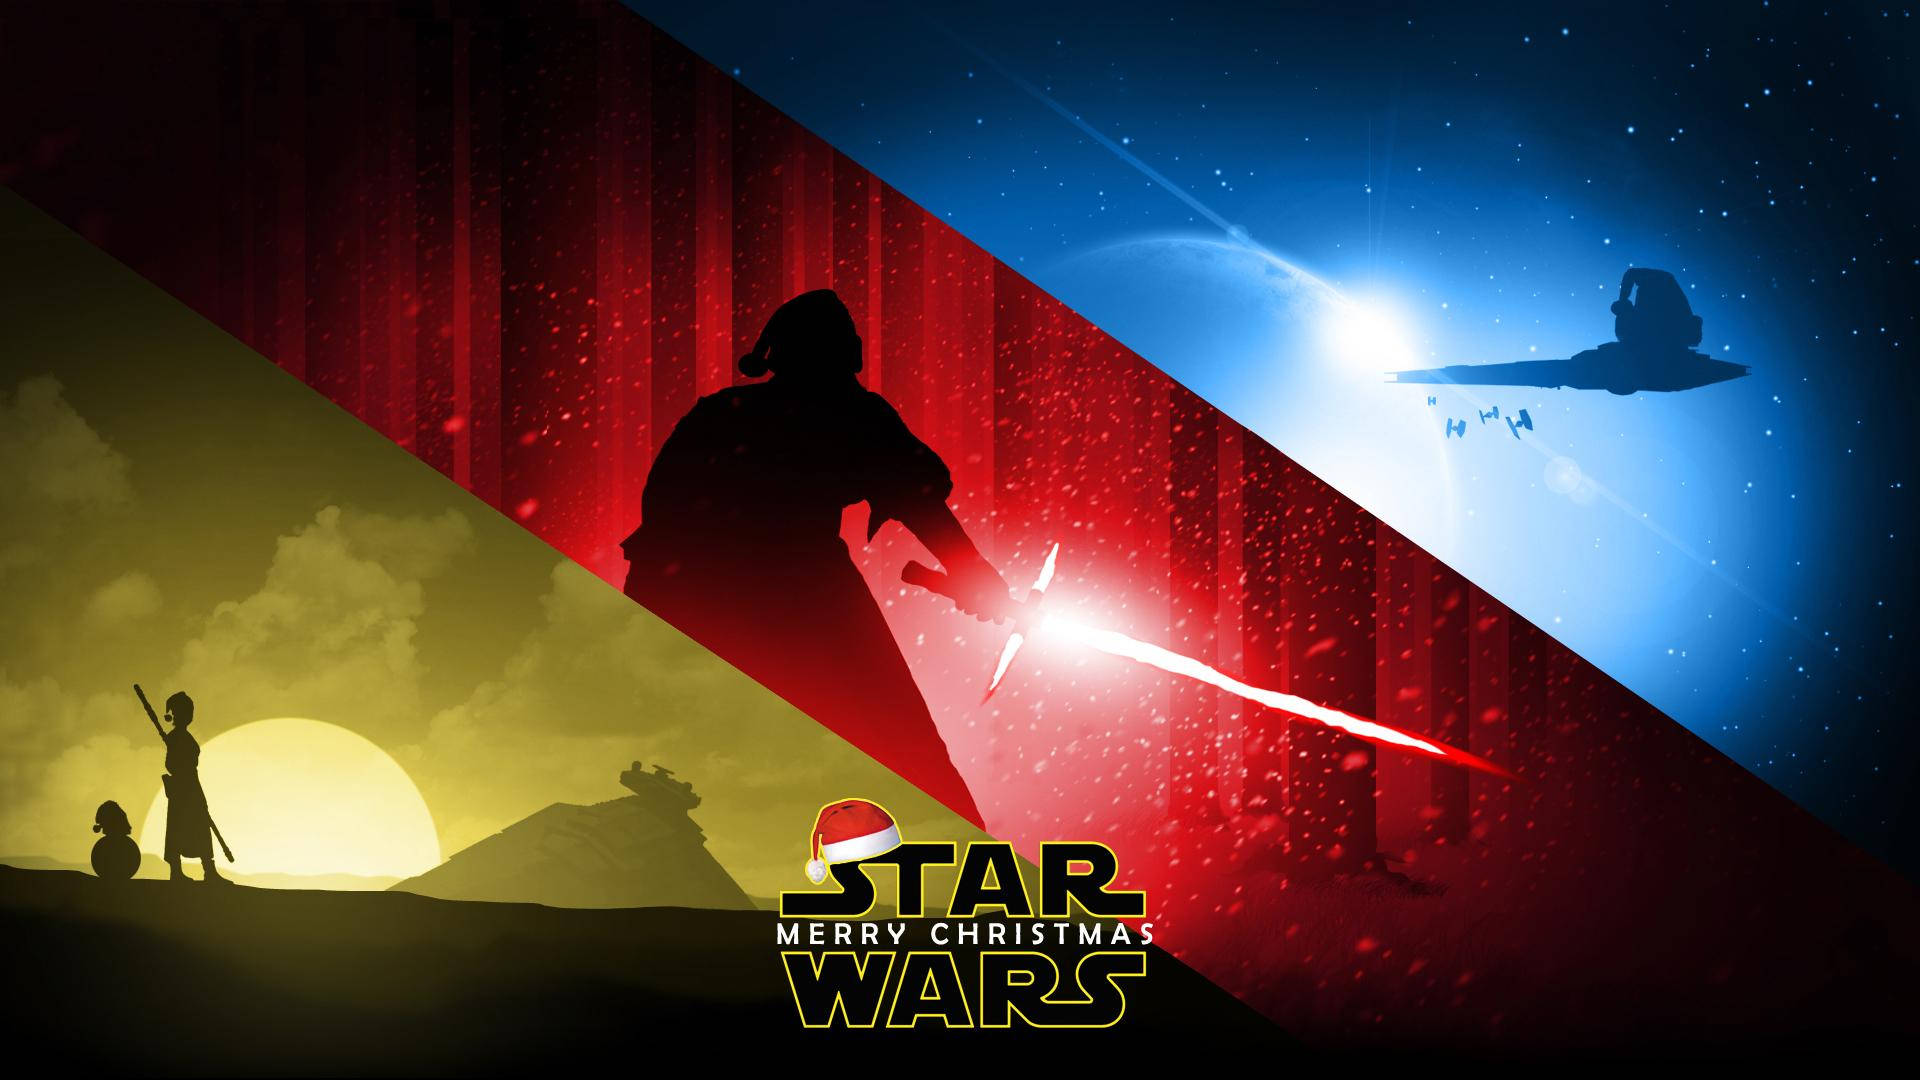 Erleuchtensie Die Feiertage Mit Star Wars! Wallpaper